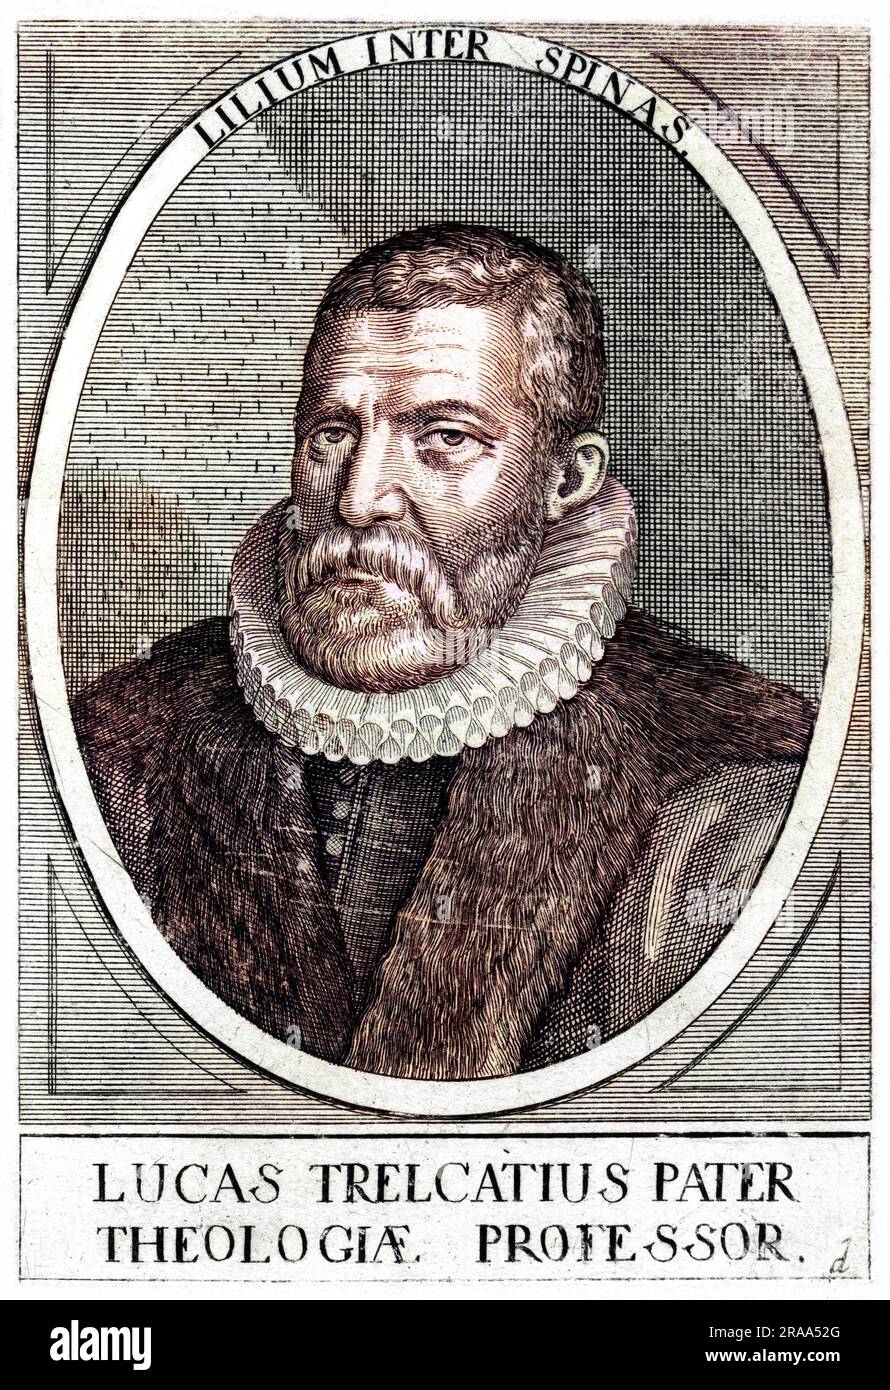 LUCAS TRELCATIUS (der Ältere), in Frankreich geborener protestantischer Kirchenmann, der gezwungen war, Zuflucht in London zu suchen. Datum: 1542 - 1602 Stockfoto